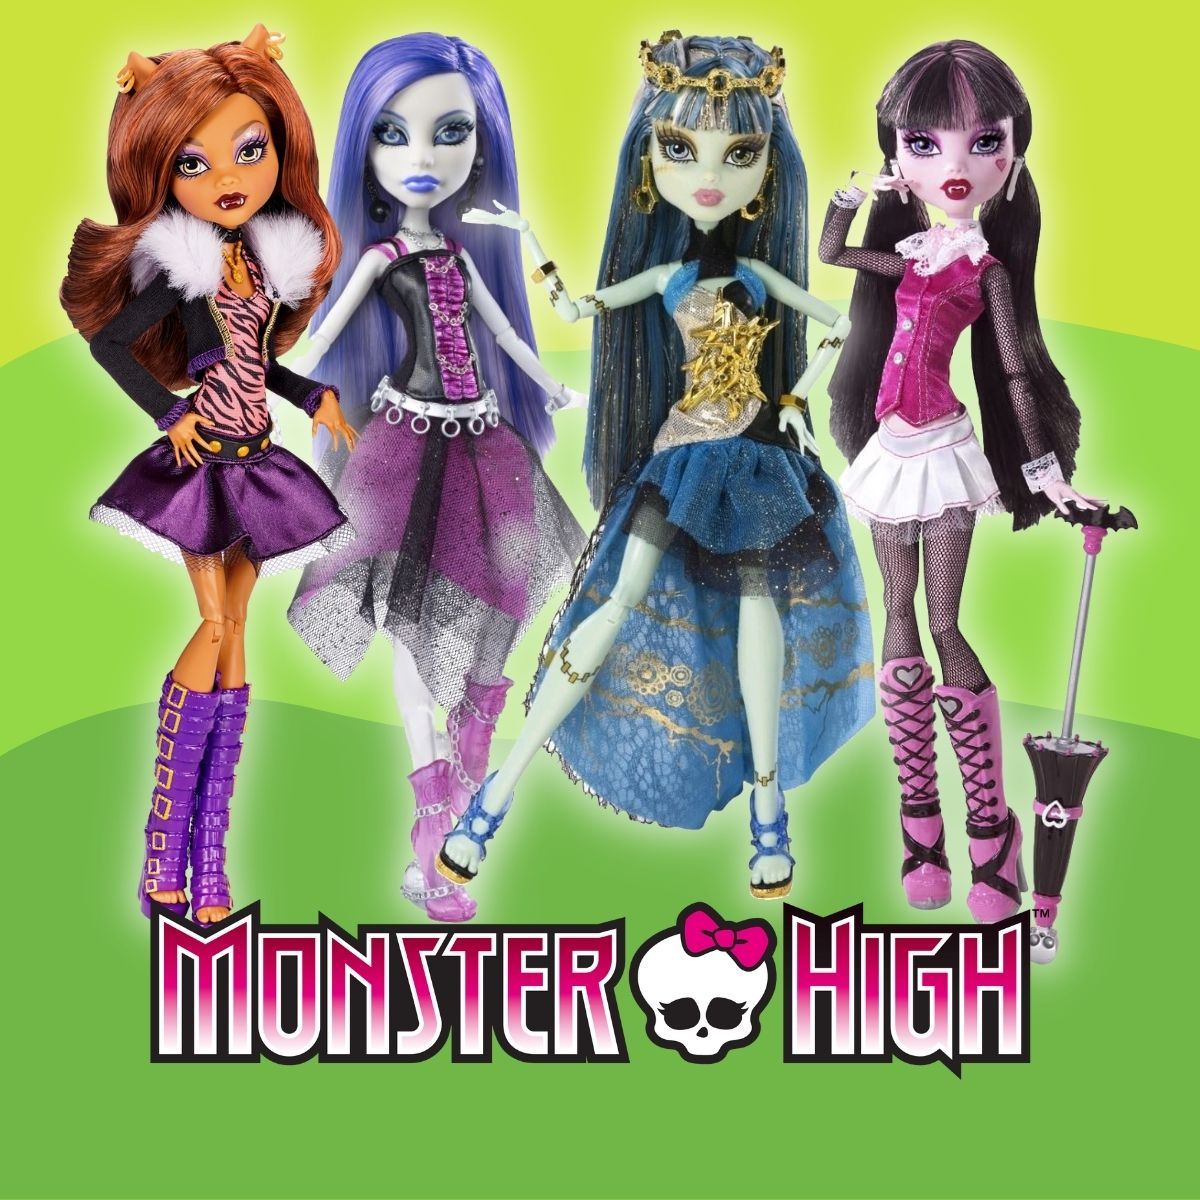 Nines Monster High